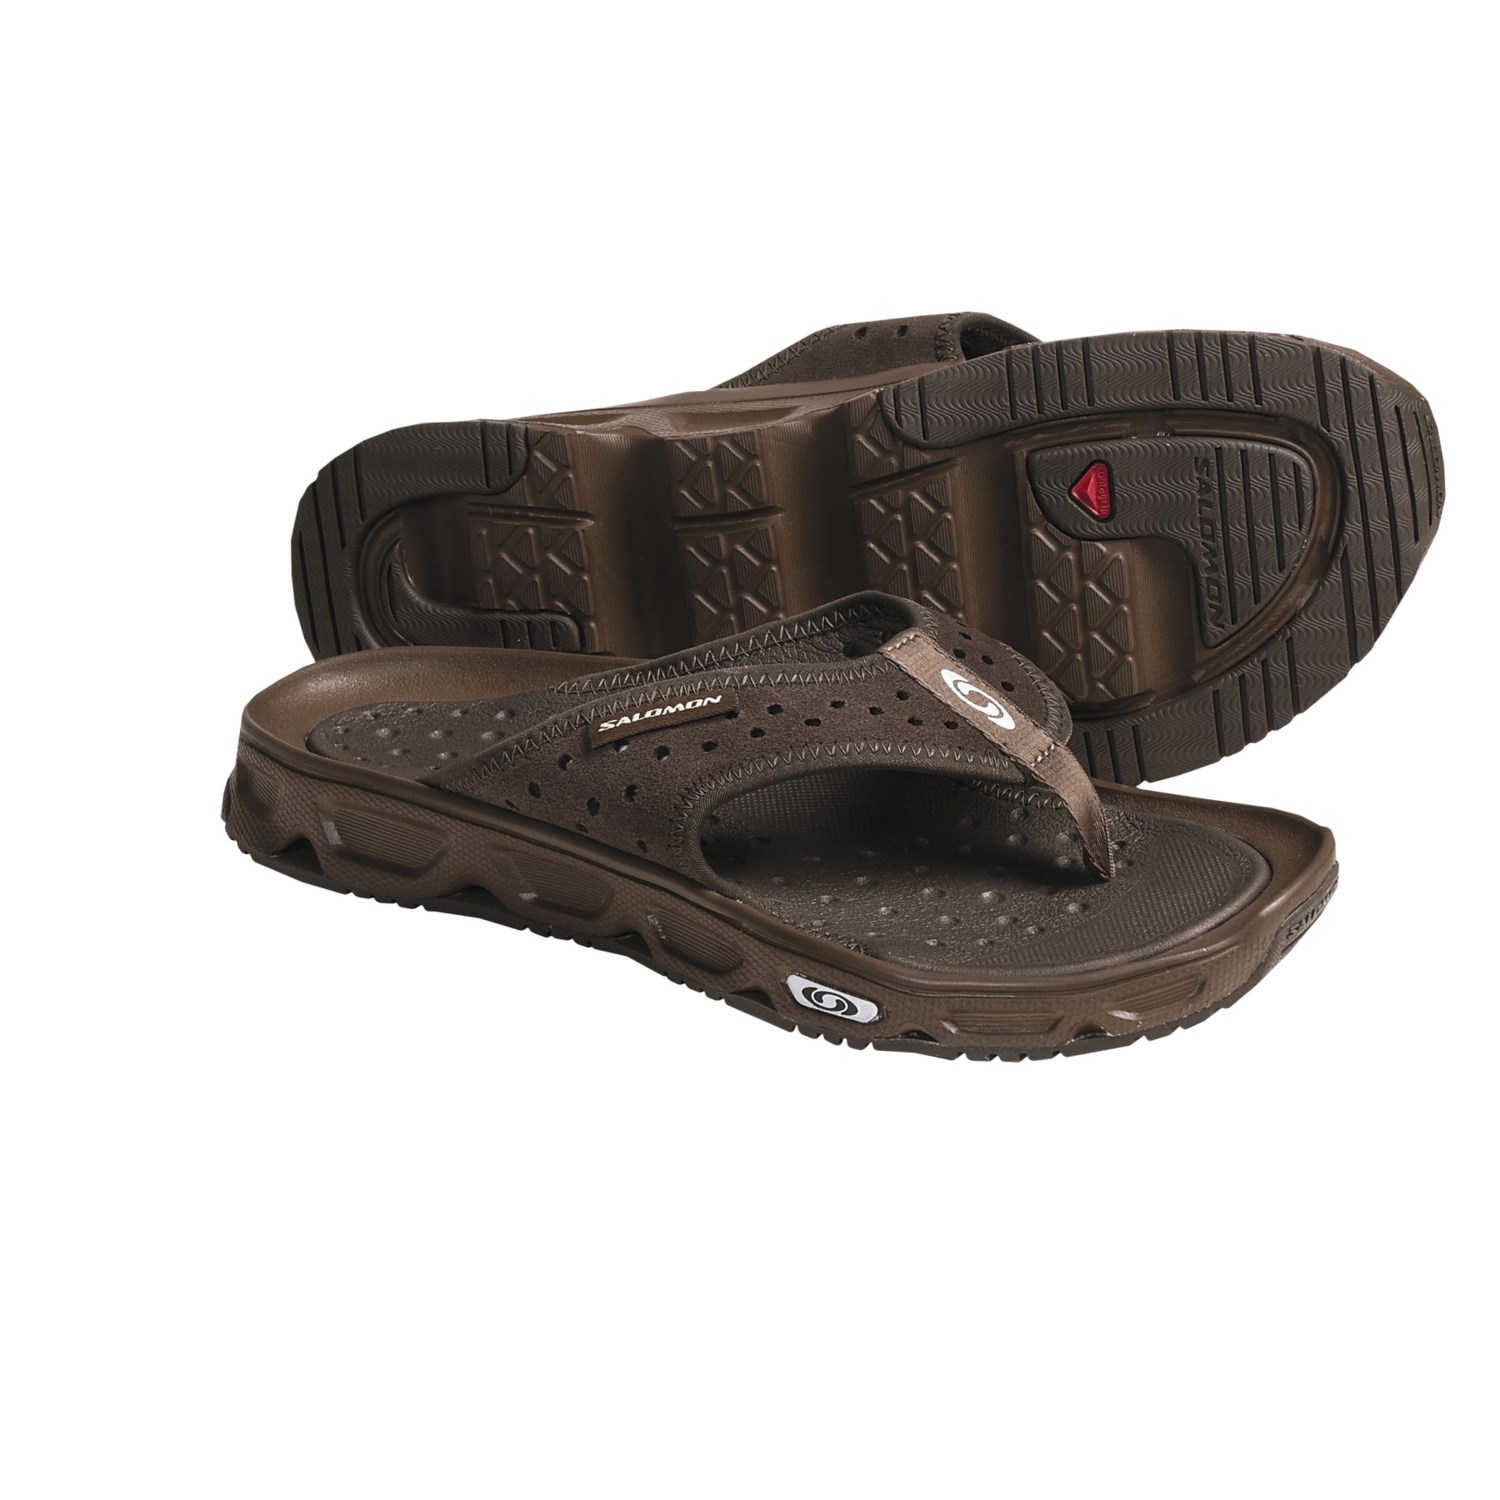 Salomon RX Break Flip-Flop Sandals (For Men) 4141J - Save 60%